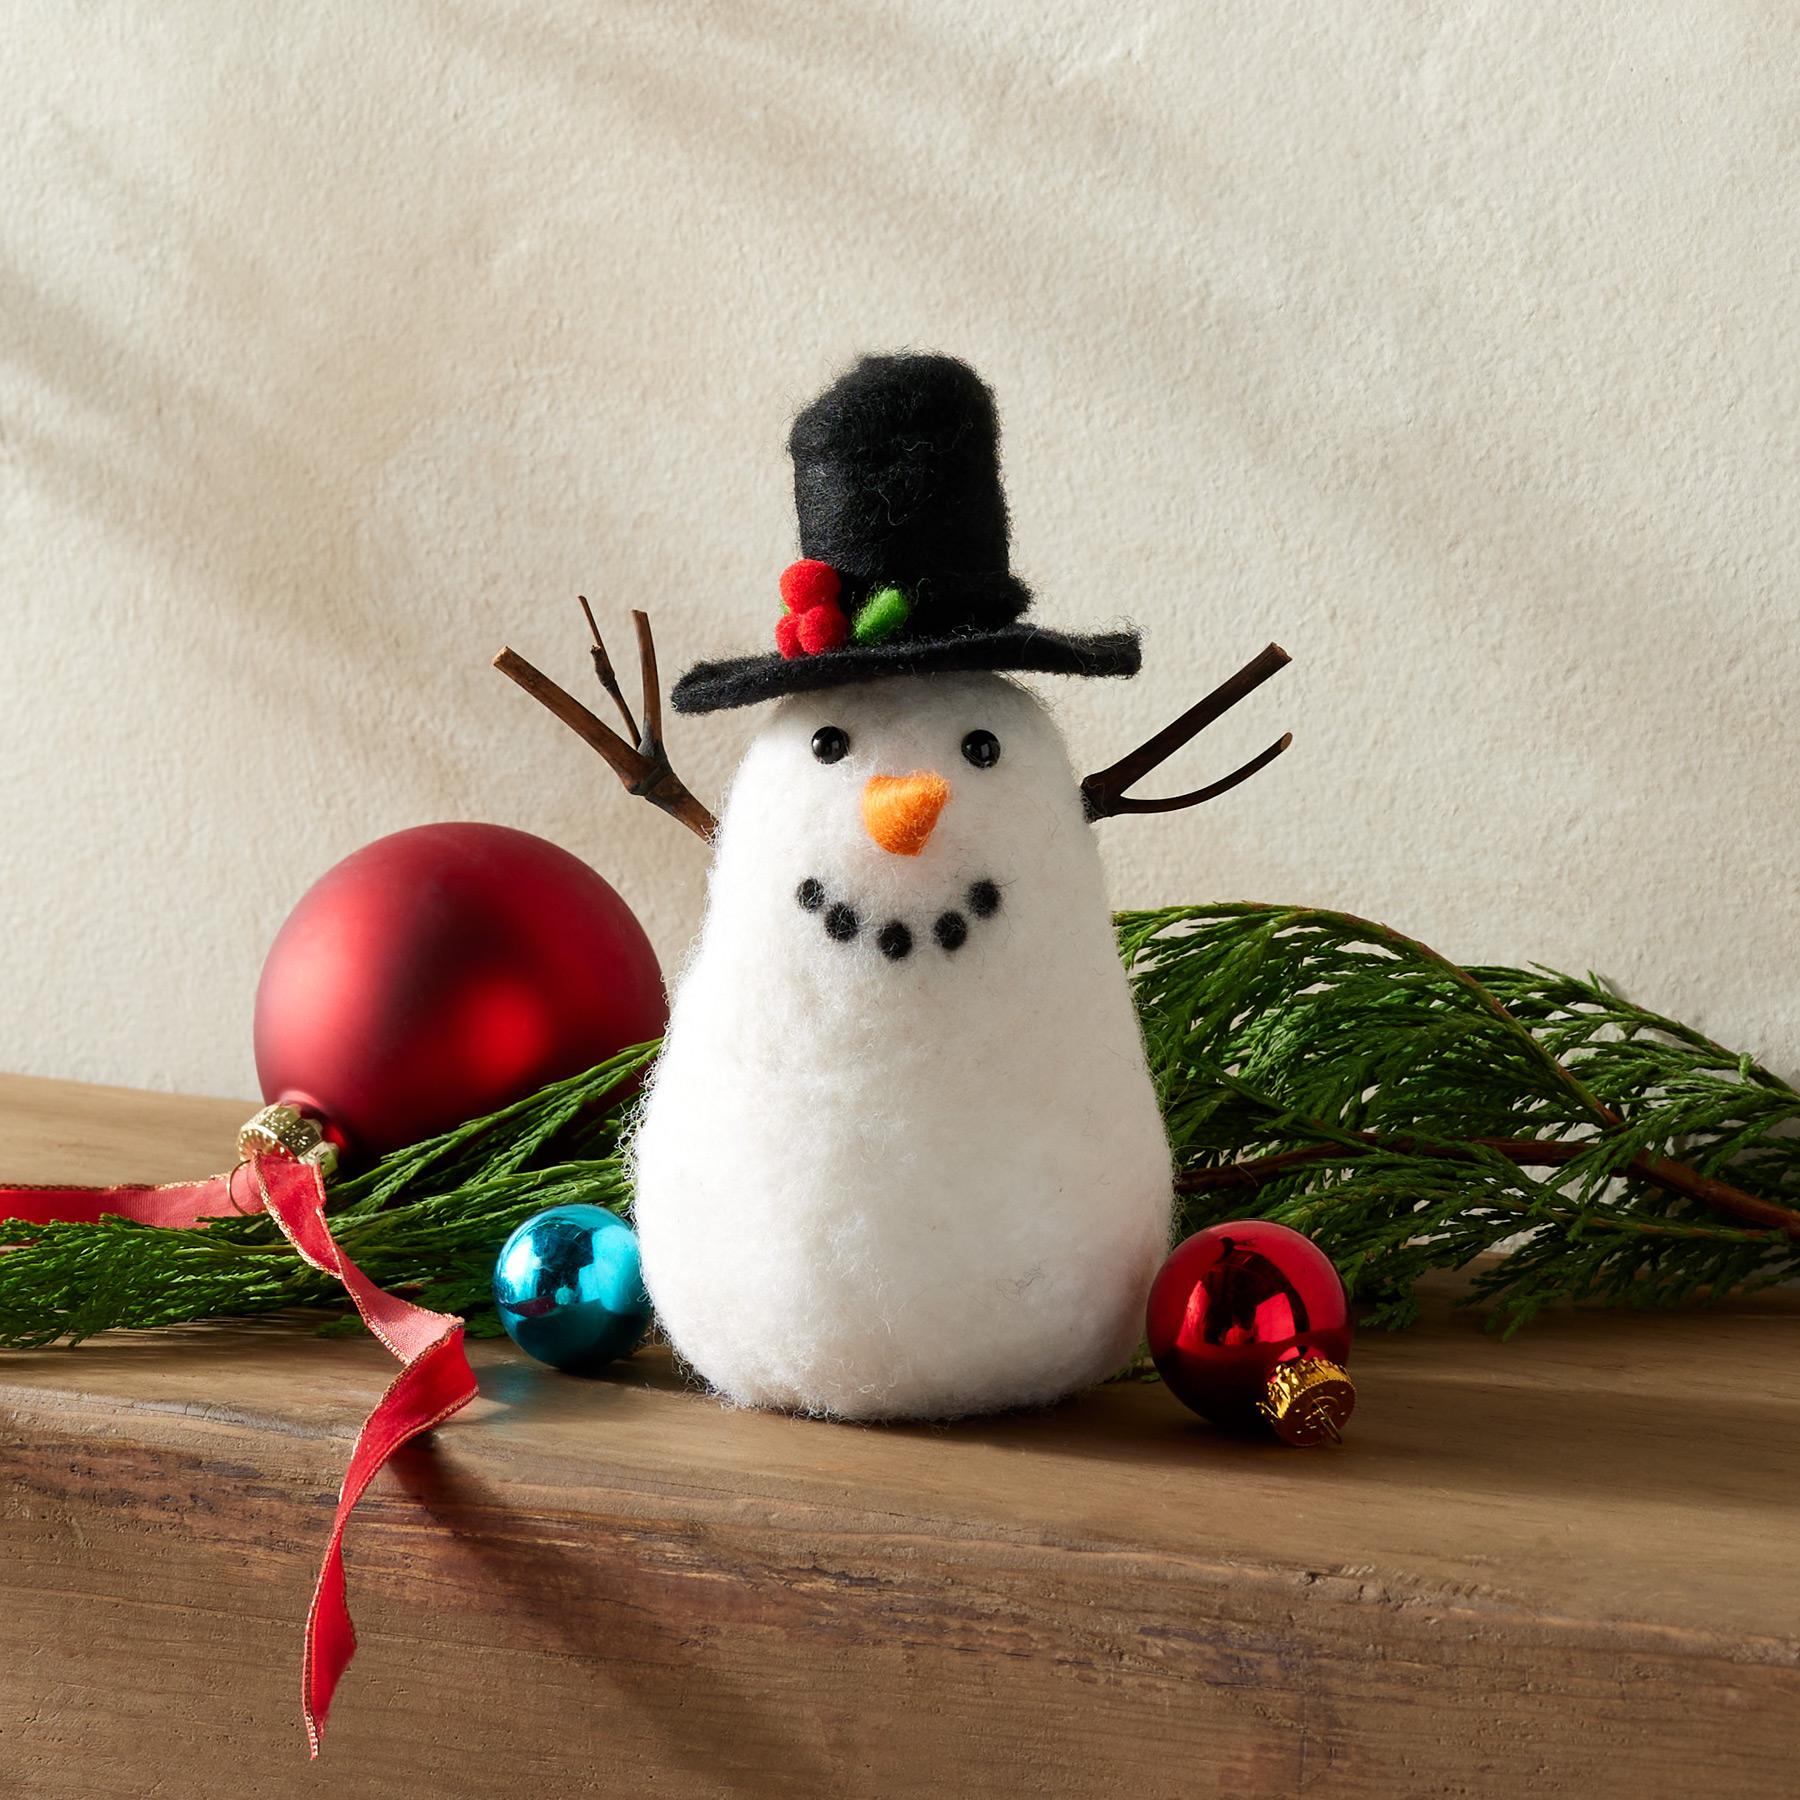 Zen Fence Sitting Mini Holiday Snowman by Shawn O'Brien